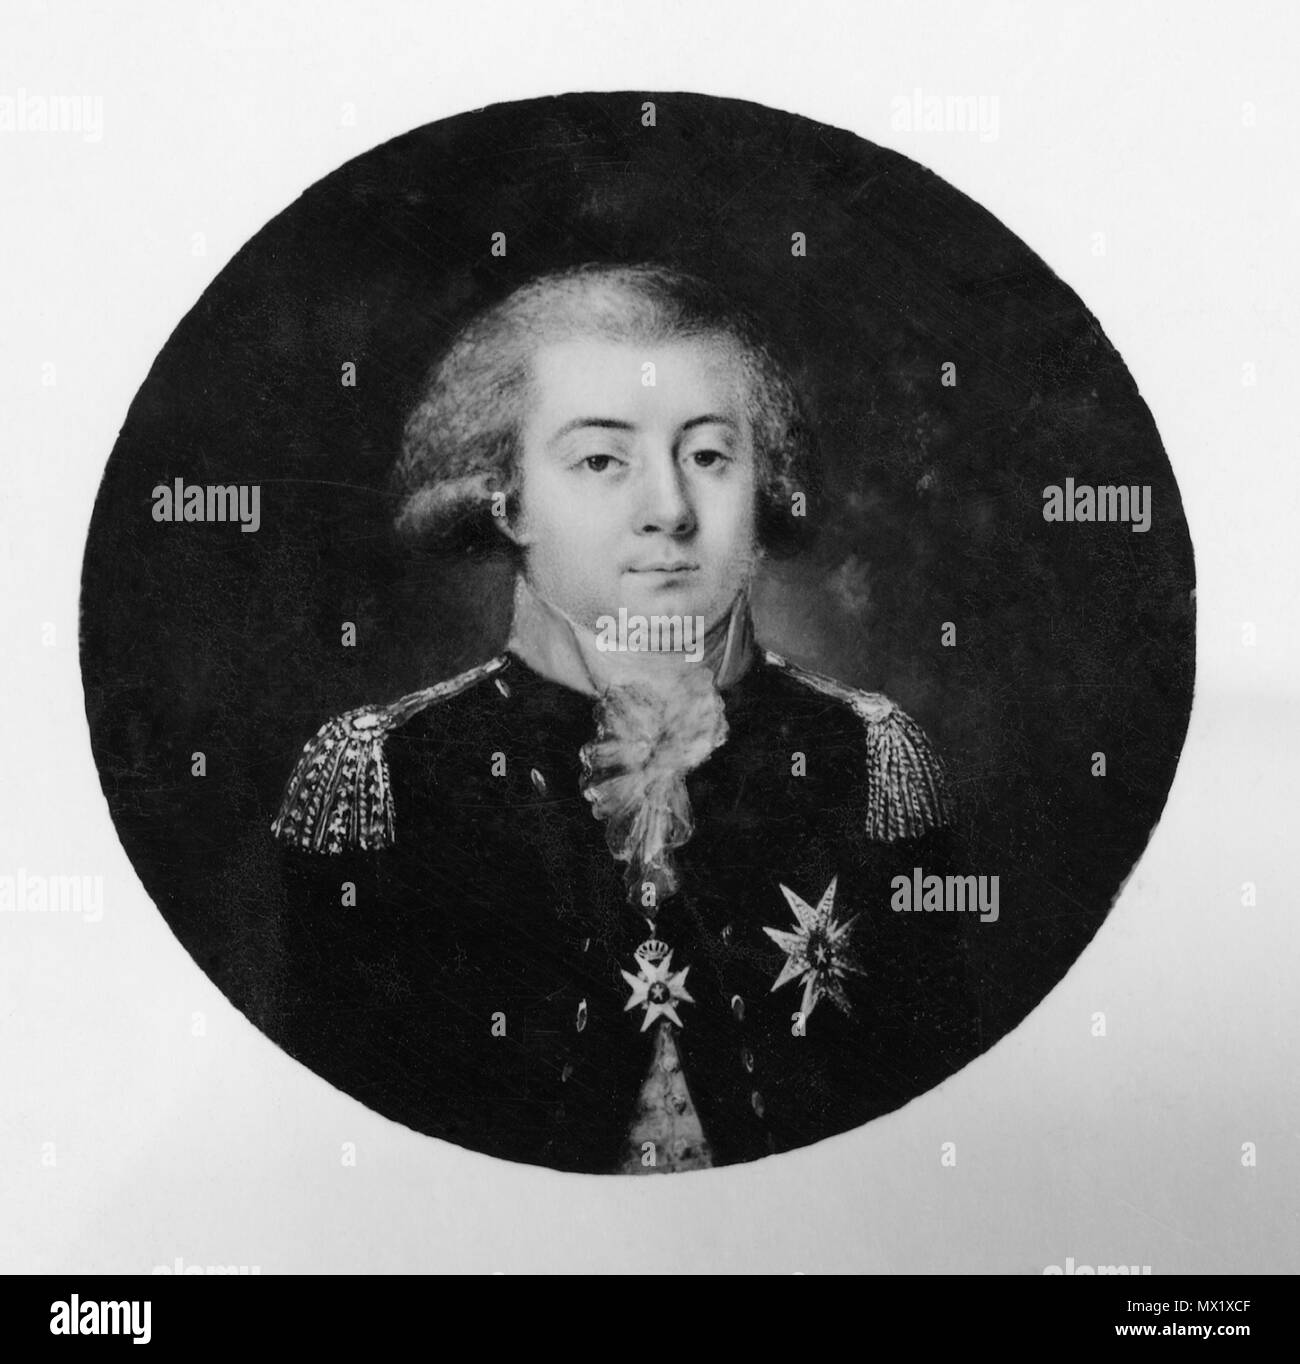 . Svenska: Gustav Adolf Reuterholm, 1756-1813 . Data sconosciuta 259 Gustav Adolf Reuterholm, 1756-1813 - Nationalmuseum - 38901 Foto Stock